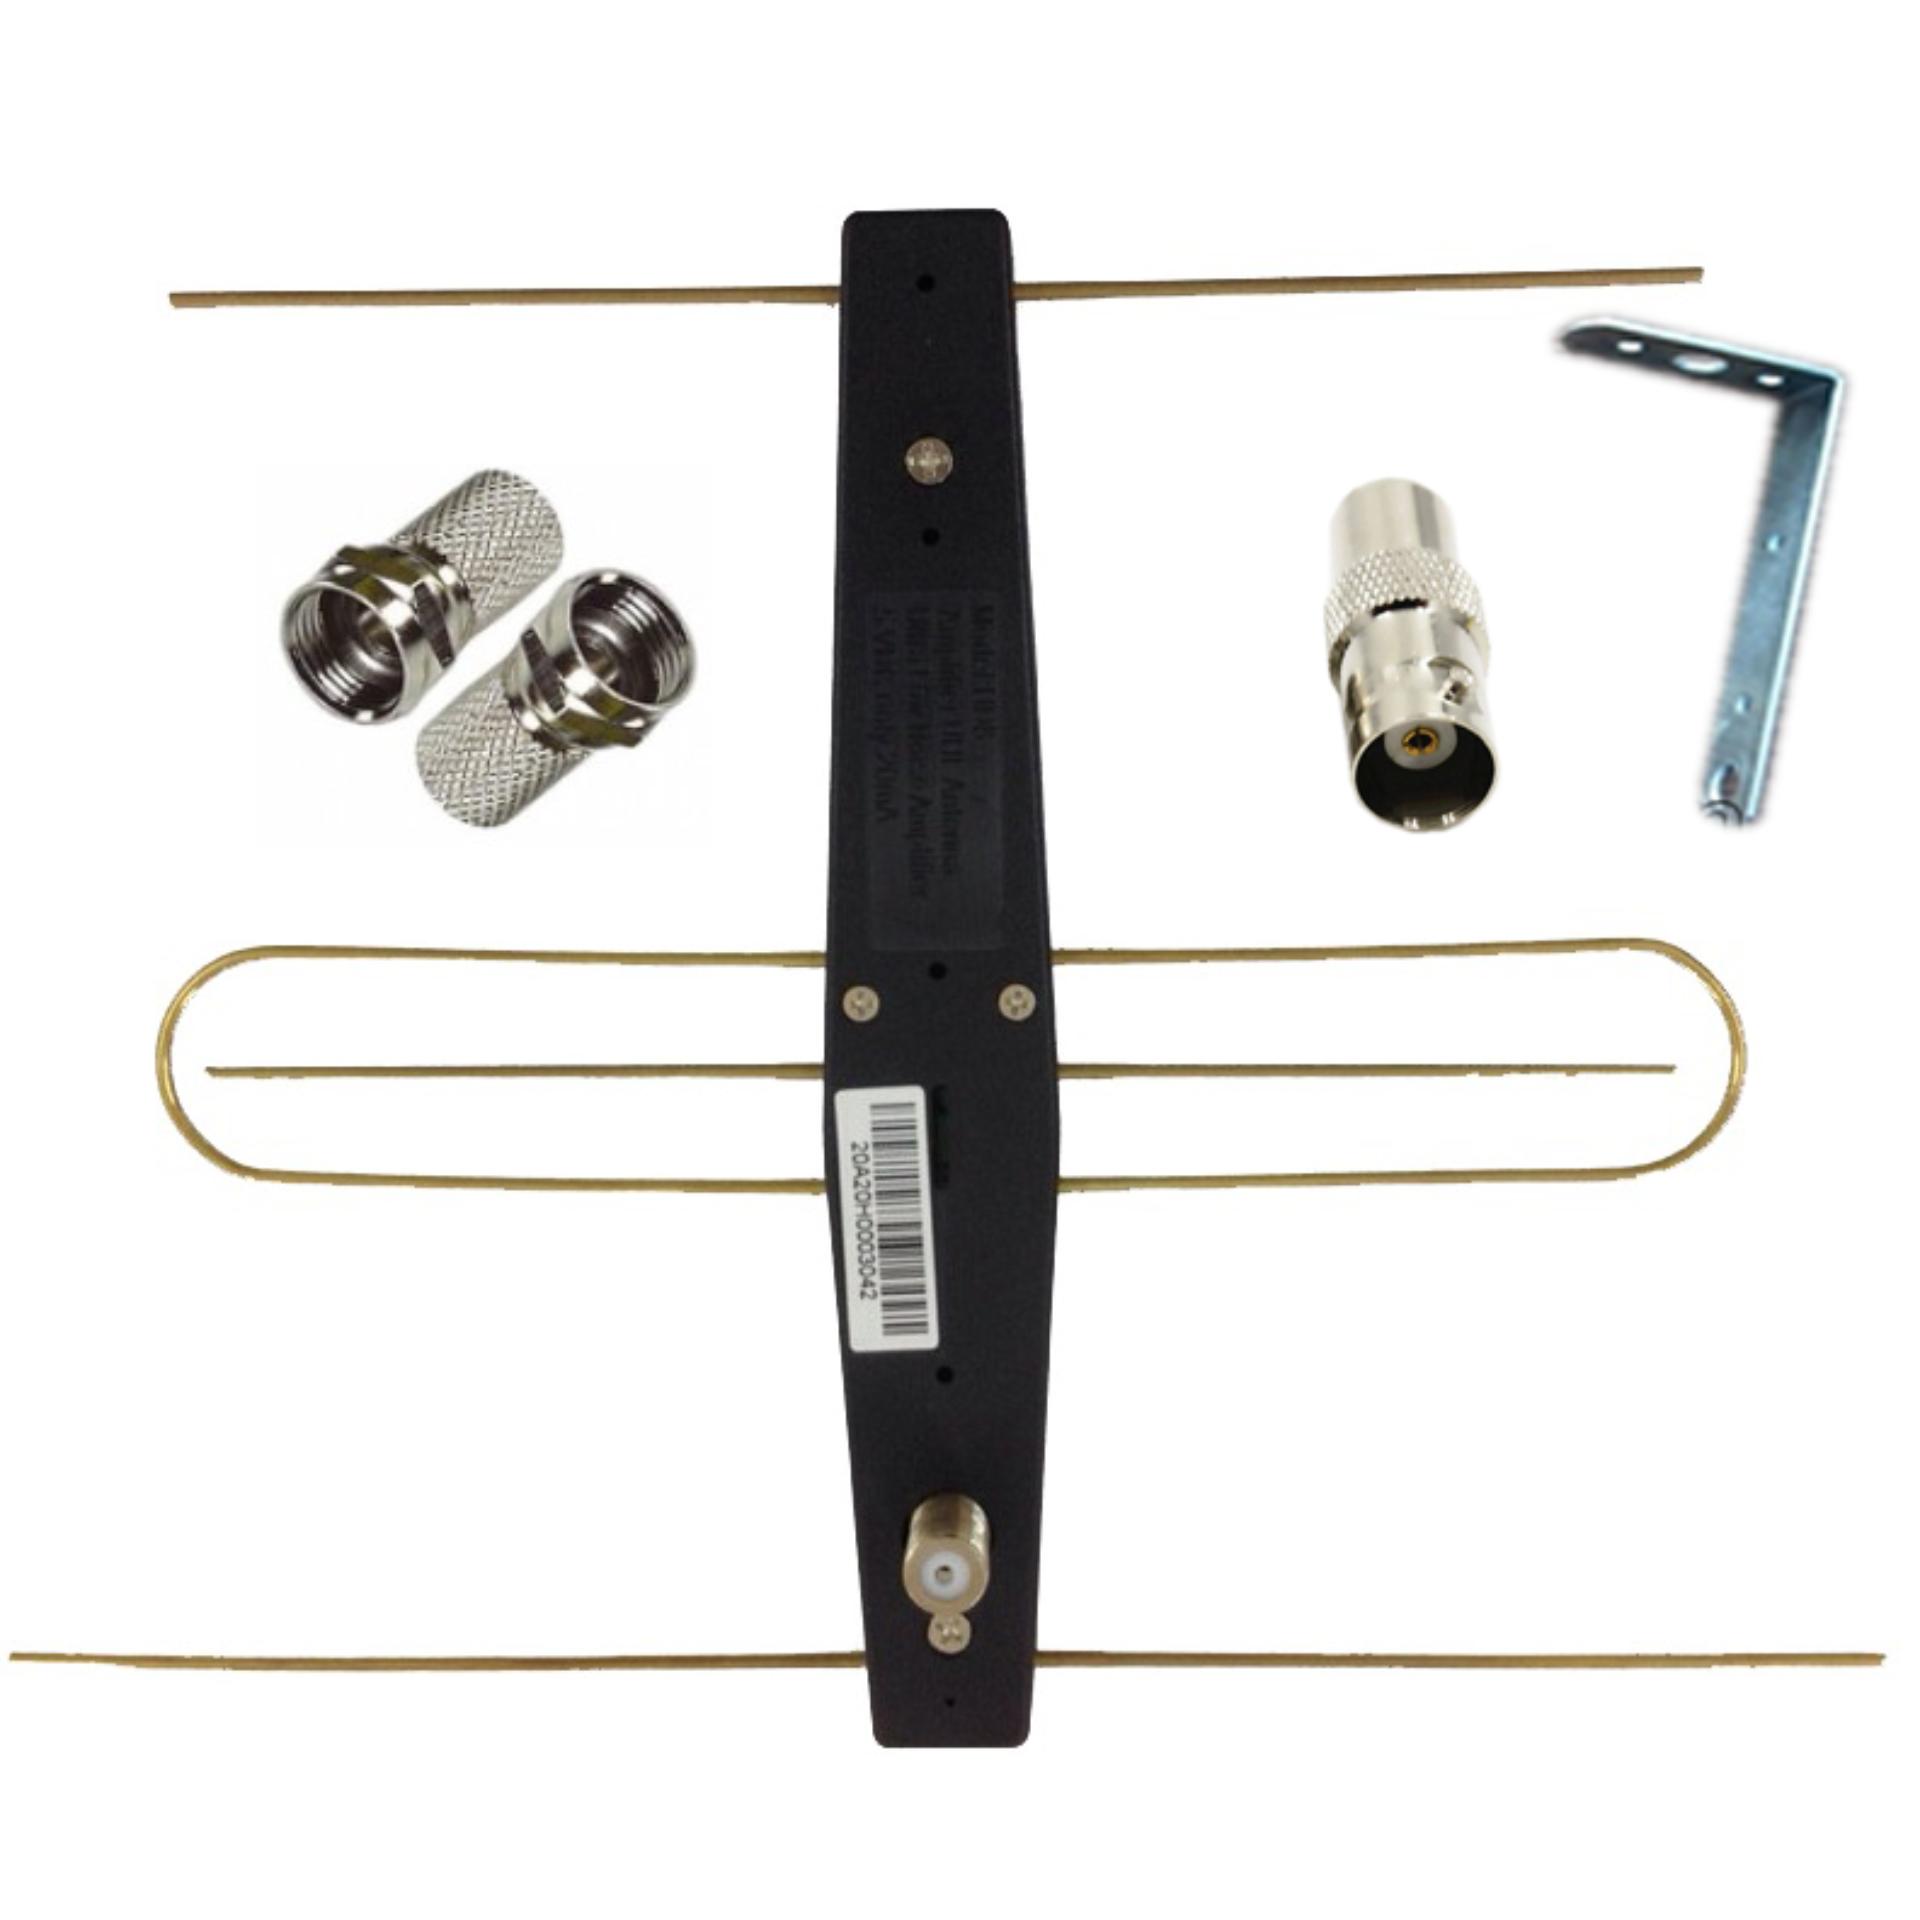 Anten có mạch khuếch đại dùng cho đầu kỹ thuật số tặng kèm Jack nối